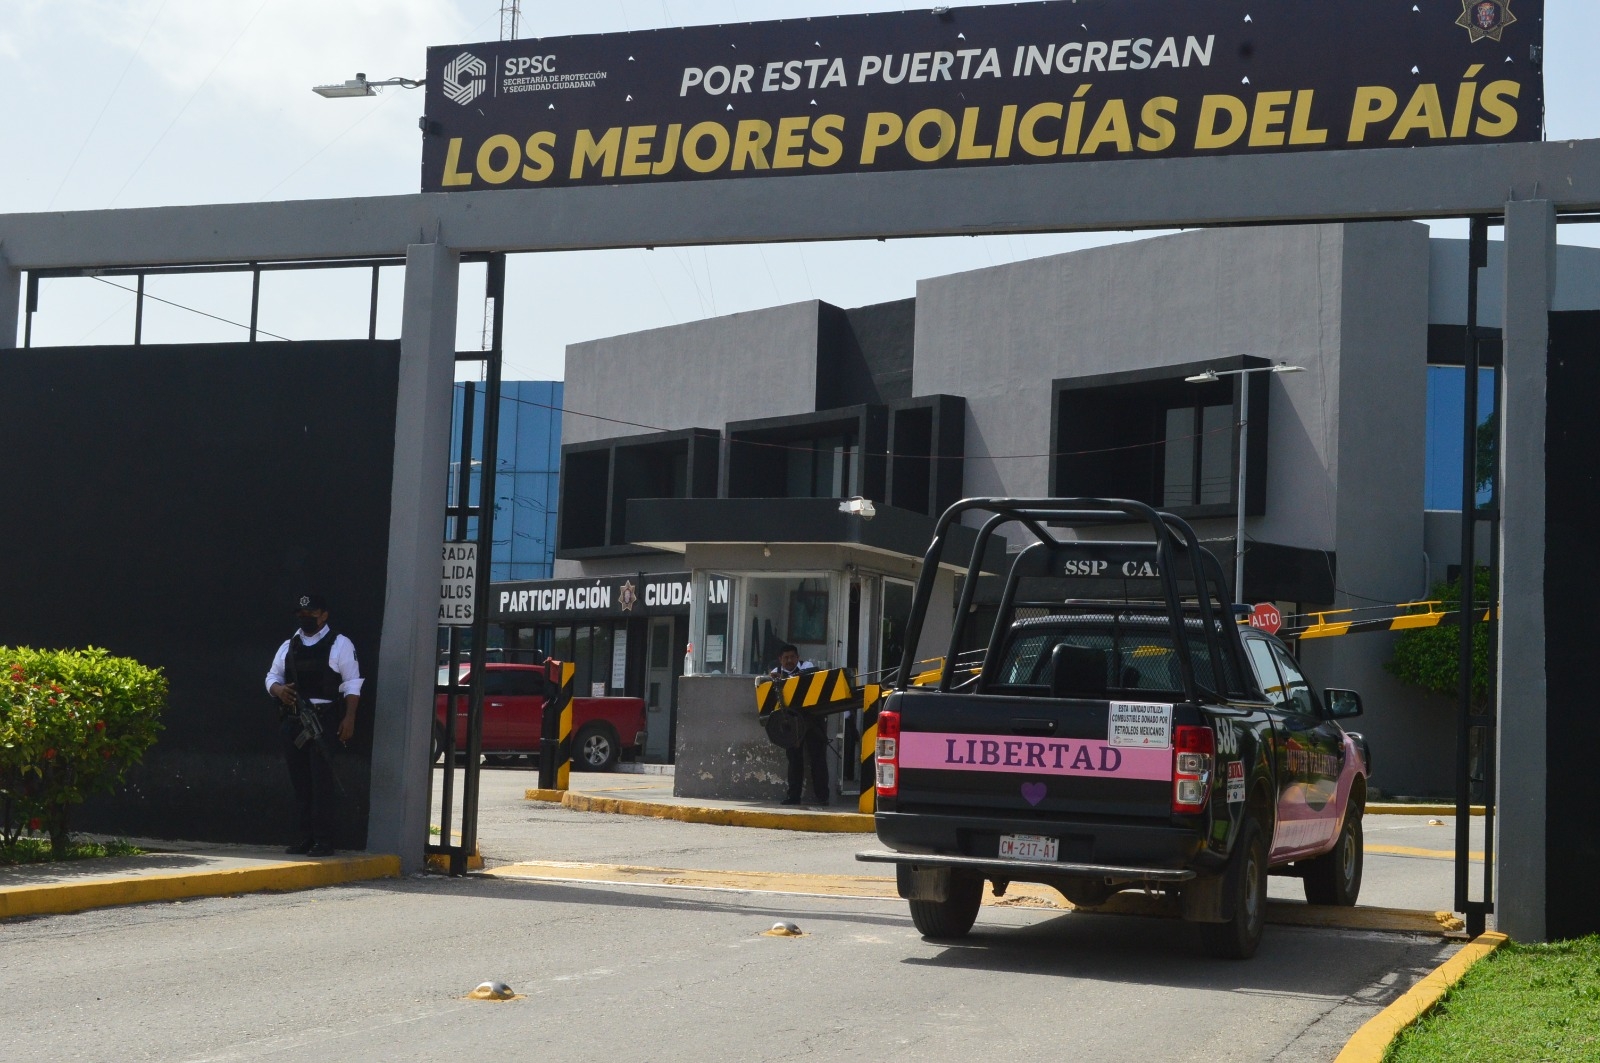 La SPSC dio de baja a 23 elementos de la policía de Campeche